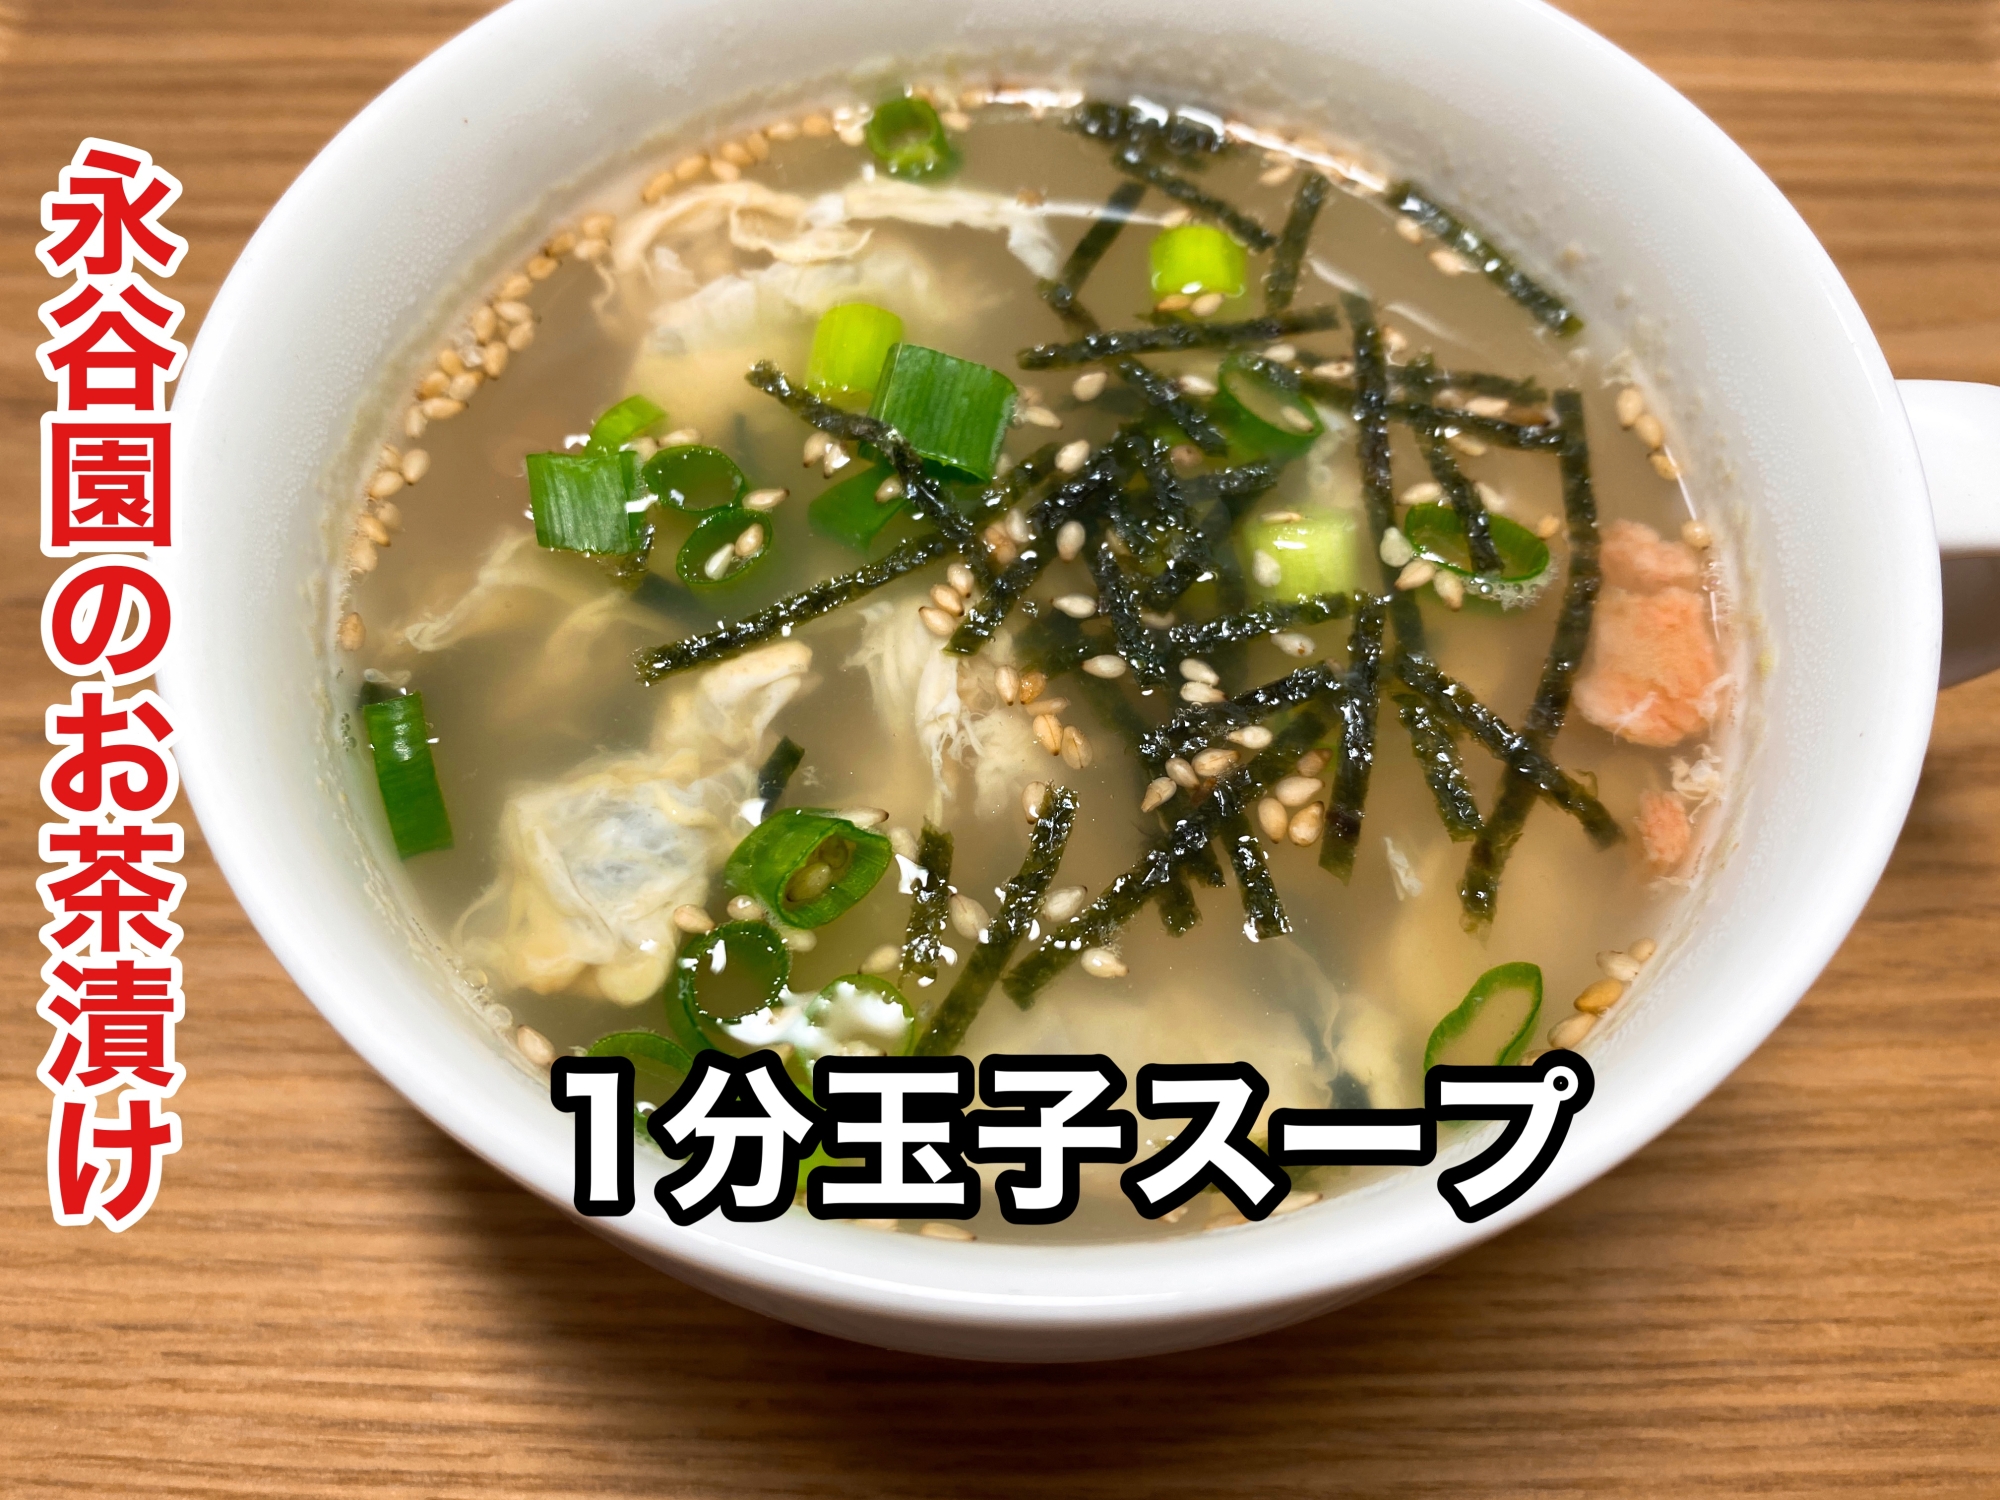 お茶漬け海苔で簡単 卵スープ レシピ 作り方 By ウキウキるんるんkitchen 楽天レシピ